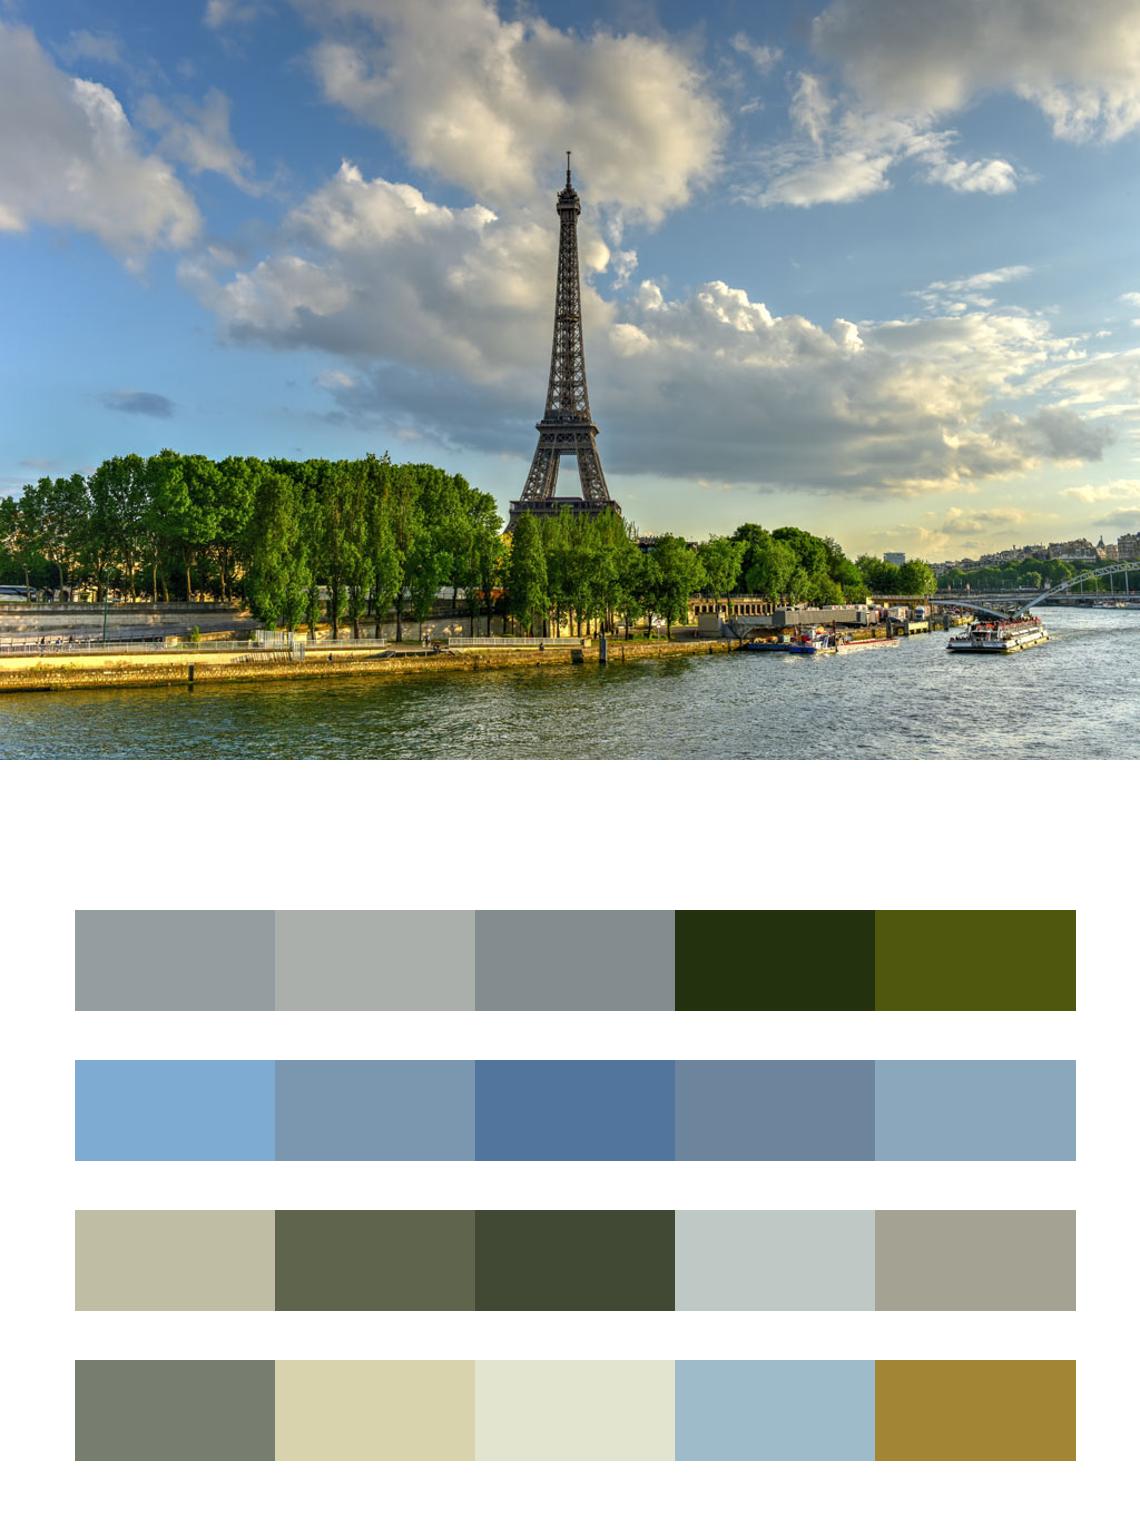 Париж Эйфелева башня летом цвета